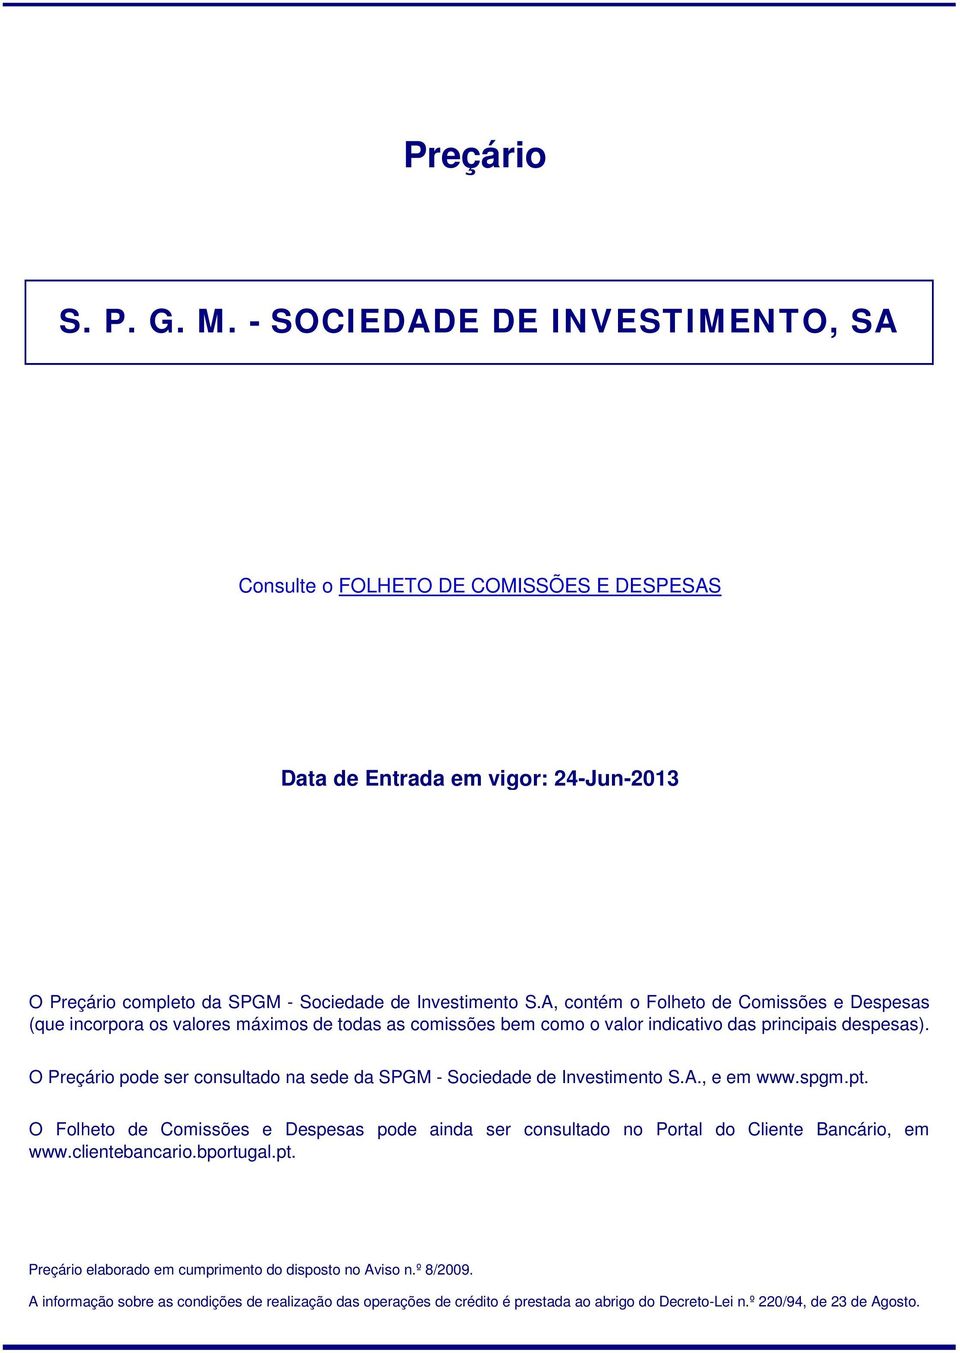 O Preçário pode ser consultado na sede da SPGM - Sociedade de Investimento S.A., e em www.spgm.pt.